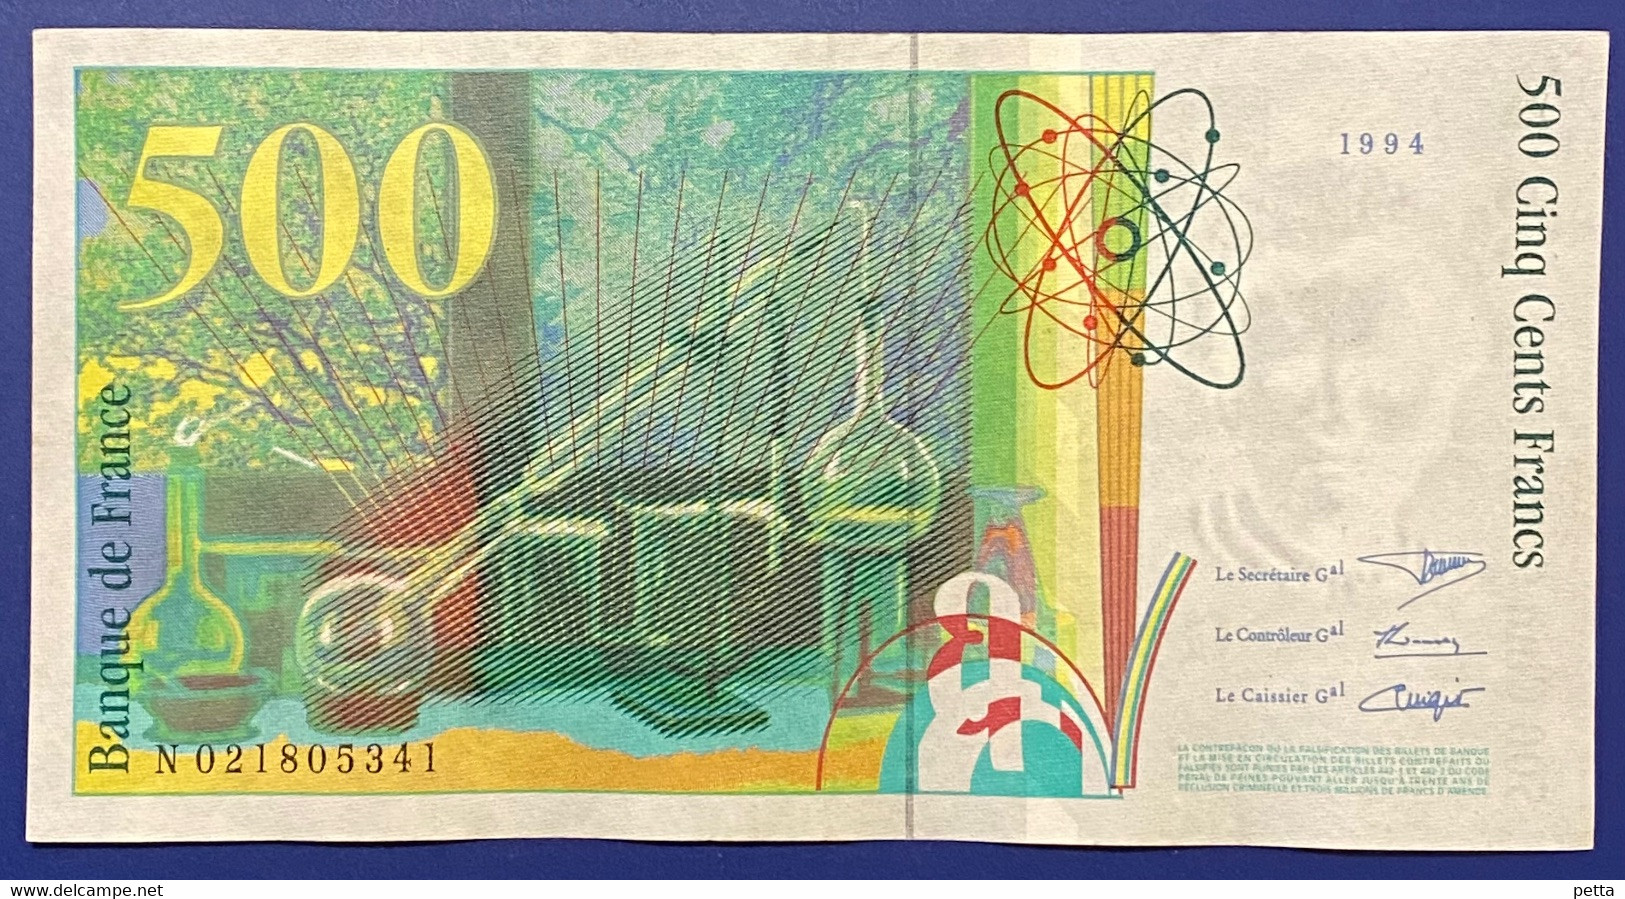 Billet De 500 Francs Pierre Et Marie Curie De 1994 / Alph N 021805341 / Vendu En L’état - 500 F 1994-2000 ''Pierre En Marie Curie''